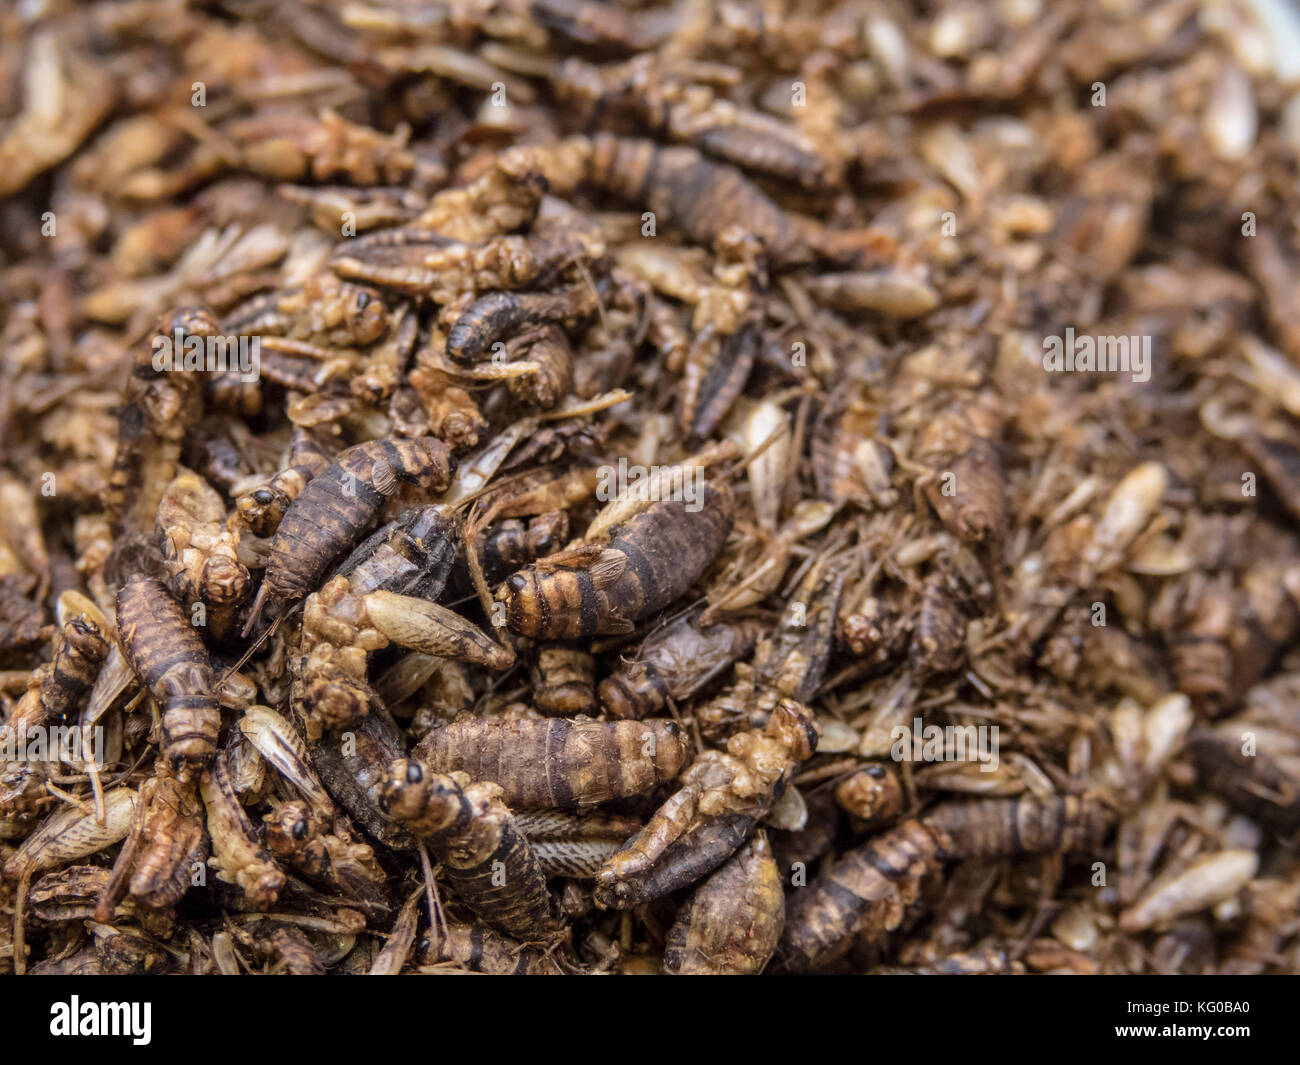 Grillos secos en una gran pila. insectos comestibles como producto alimenticio lleno de proteínas y nutrición. Foto de stock